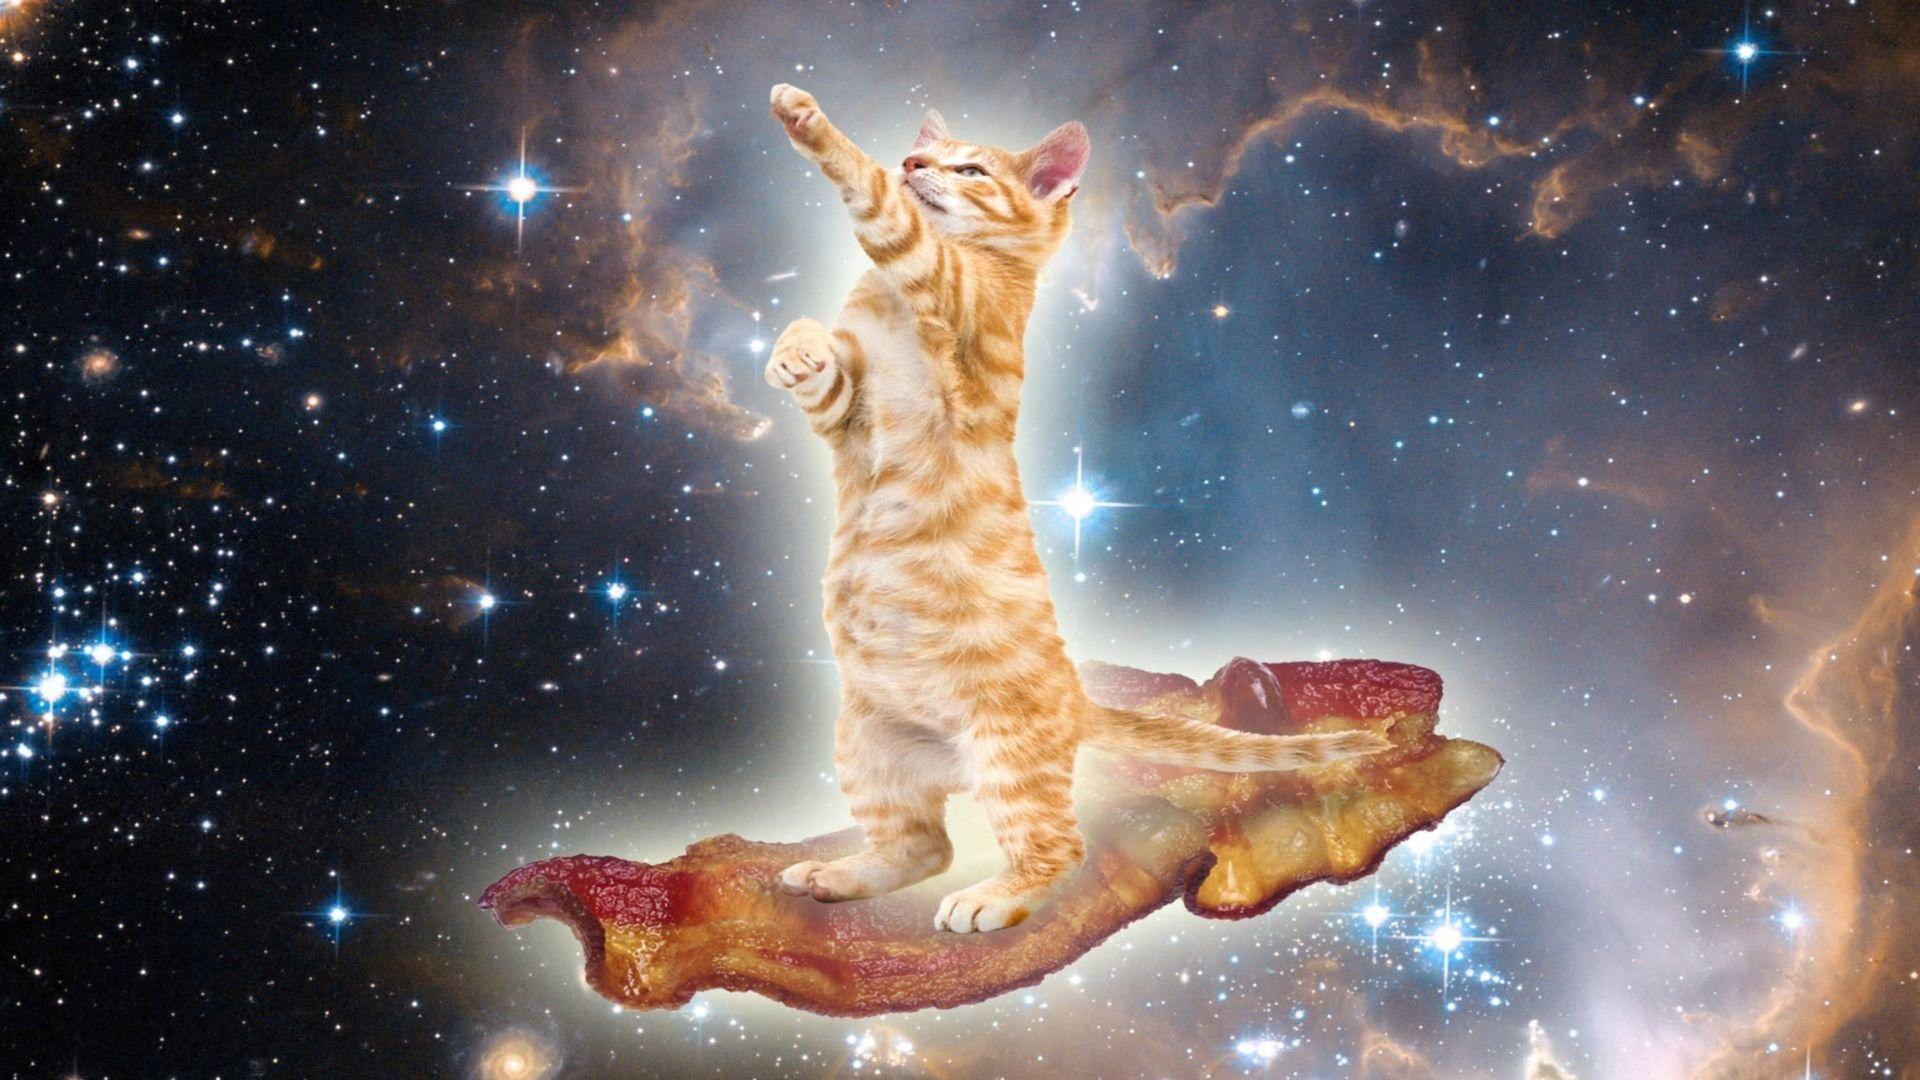 Taco Cat Wallpapers - Top Free Taco Cat